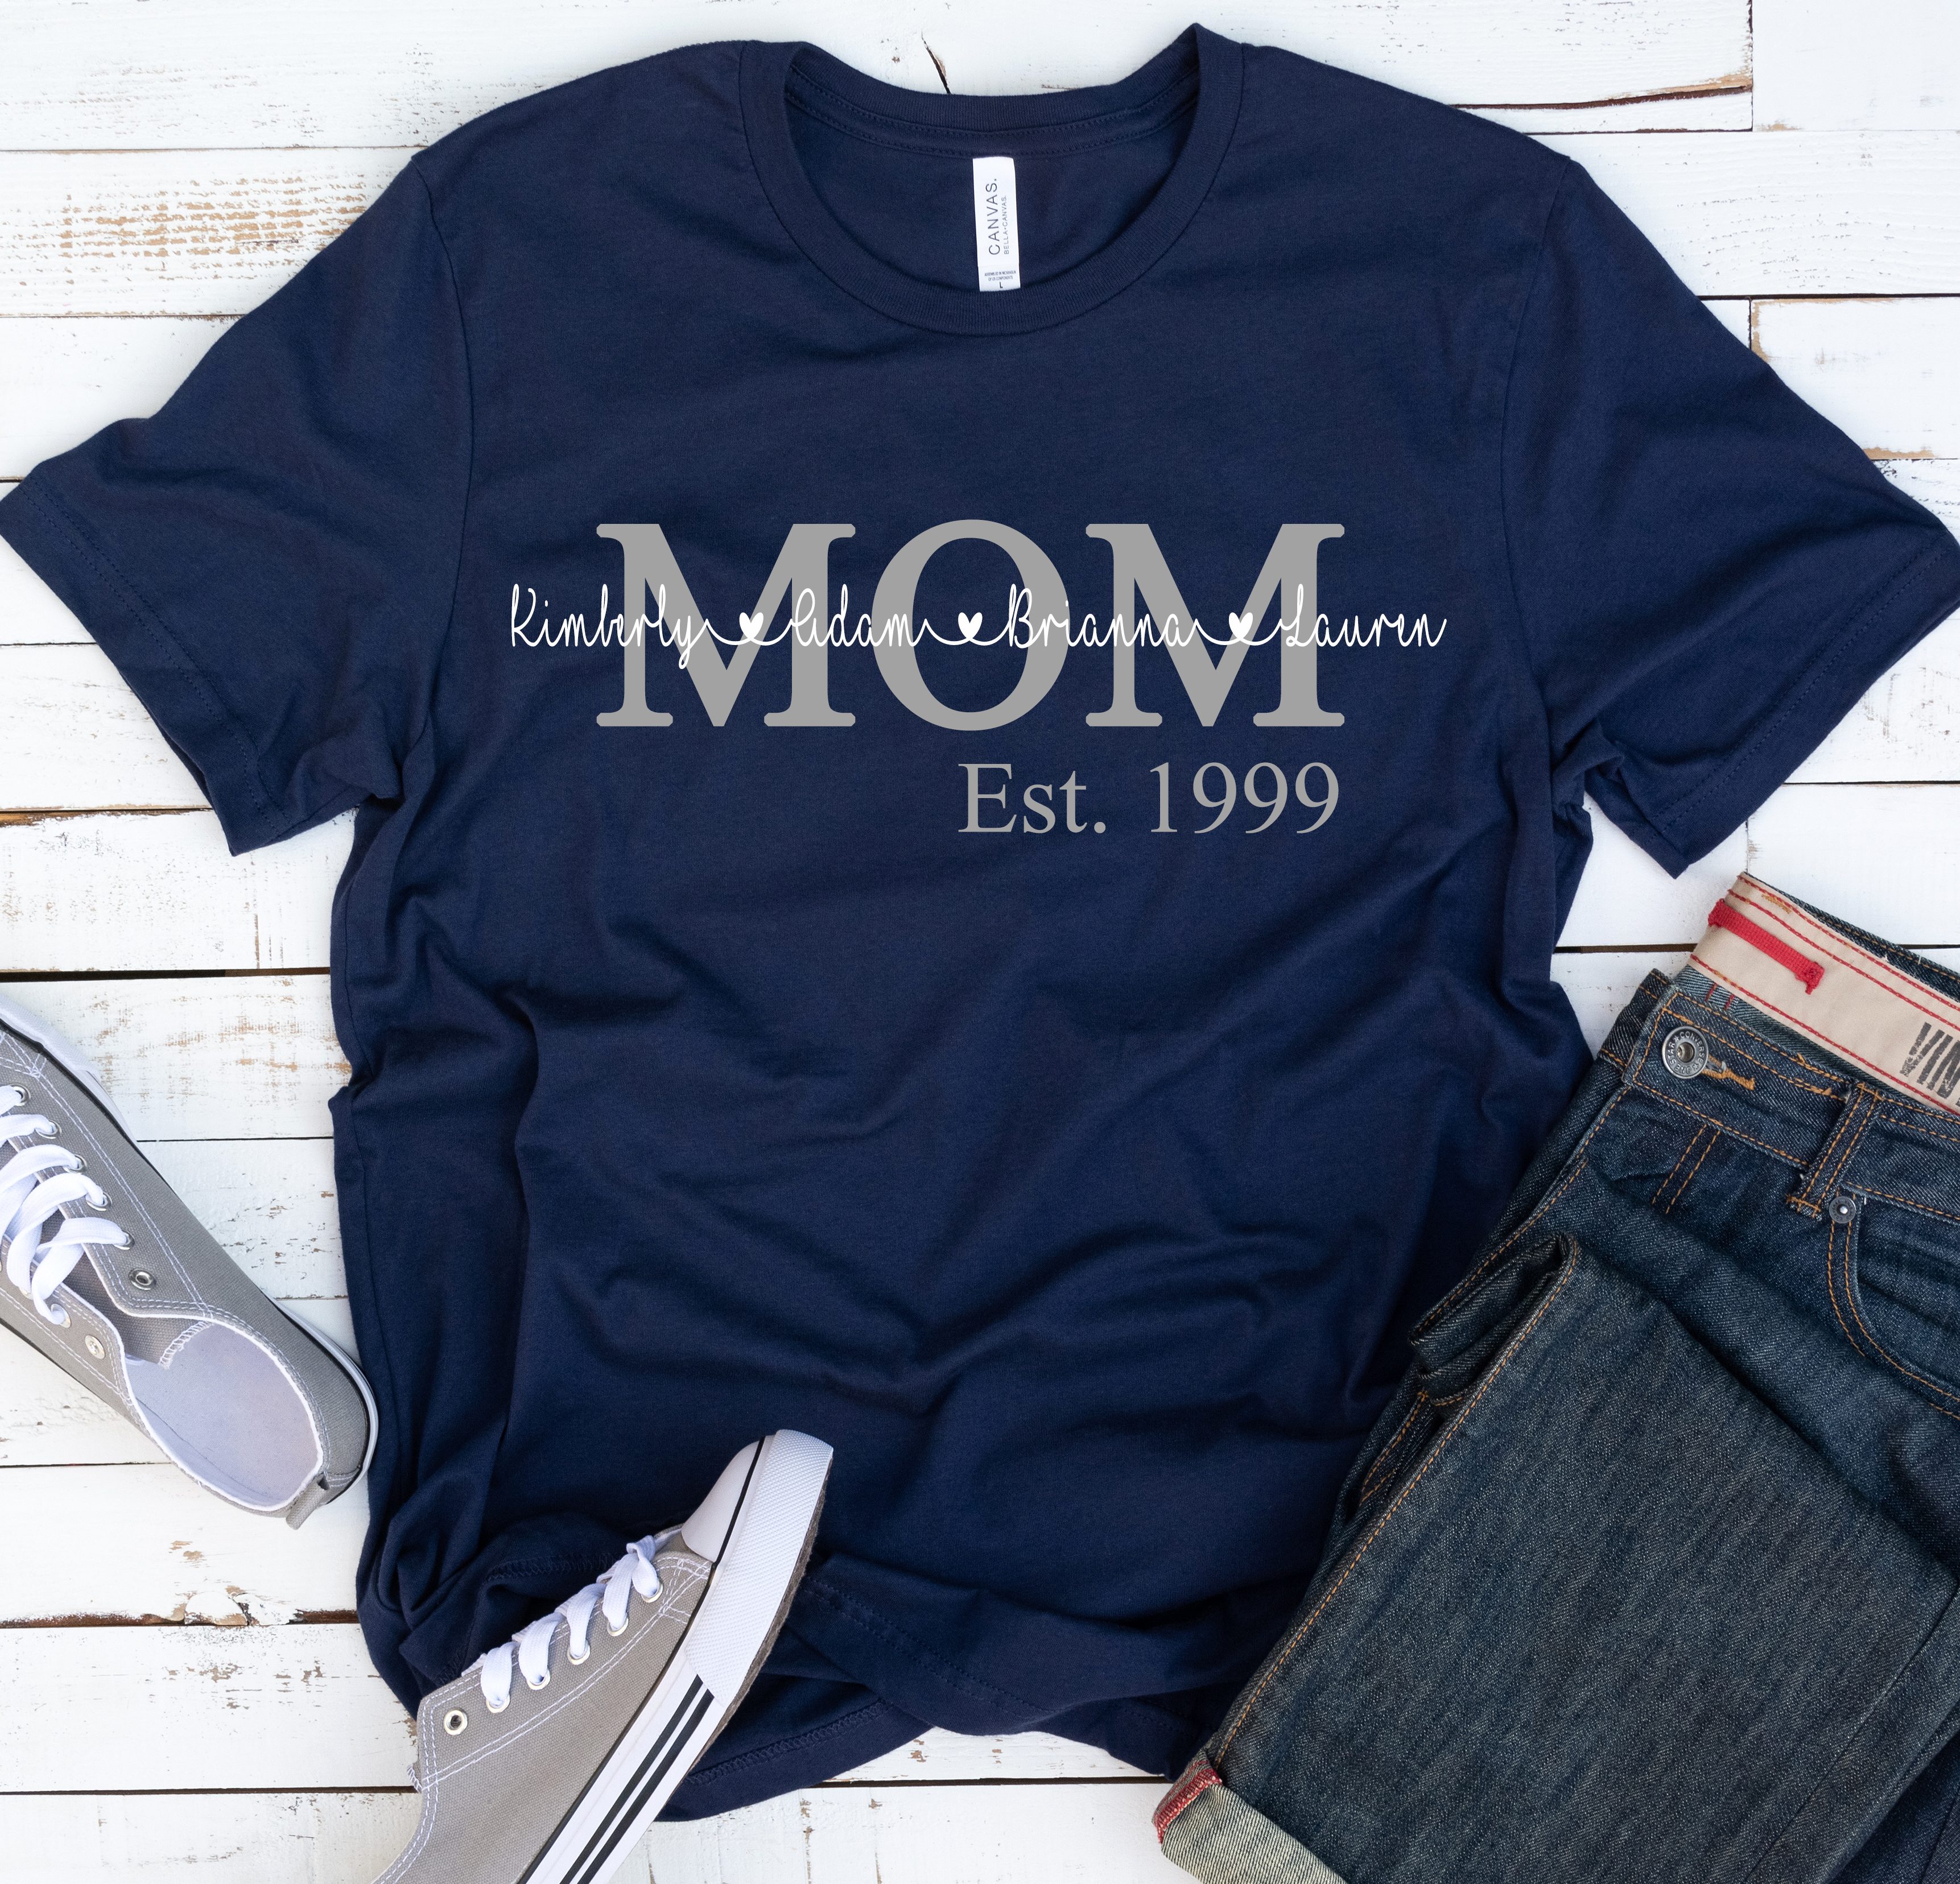 Download Mom Established T-Shirt | Imaginary Ink Design Studio